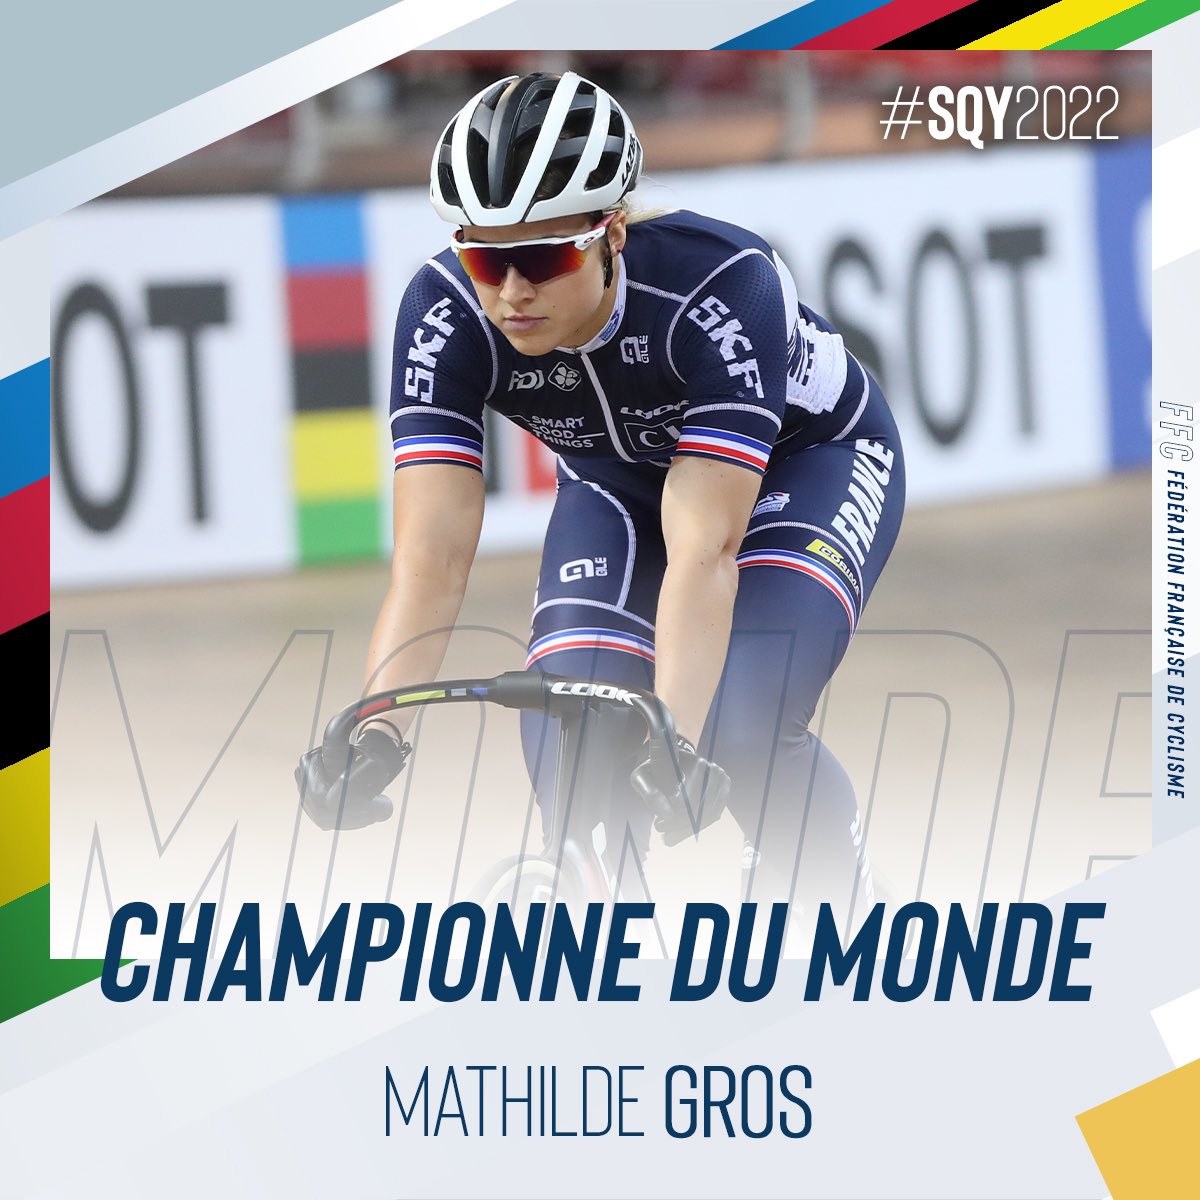 🌈 CHAMPIONNE DU MONDE 🌈 Un Tournoi de Vitesse géré d’une main de maître et un premier titre mondial élite ! BRAVO Madame Mathilde Gros 😍!